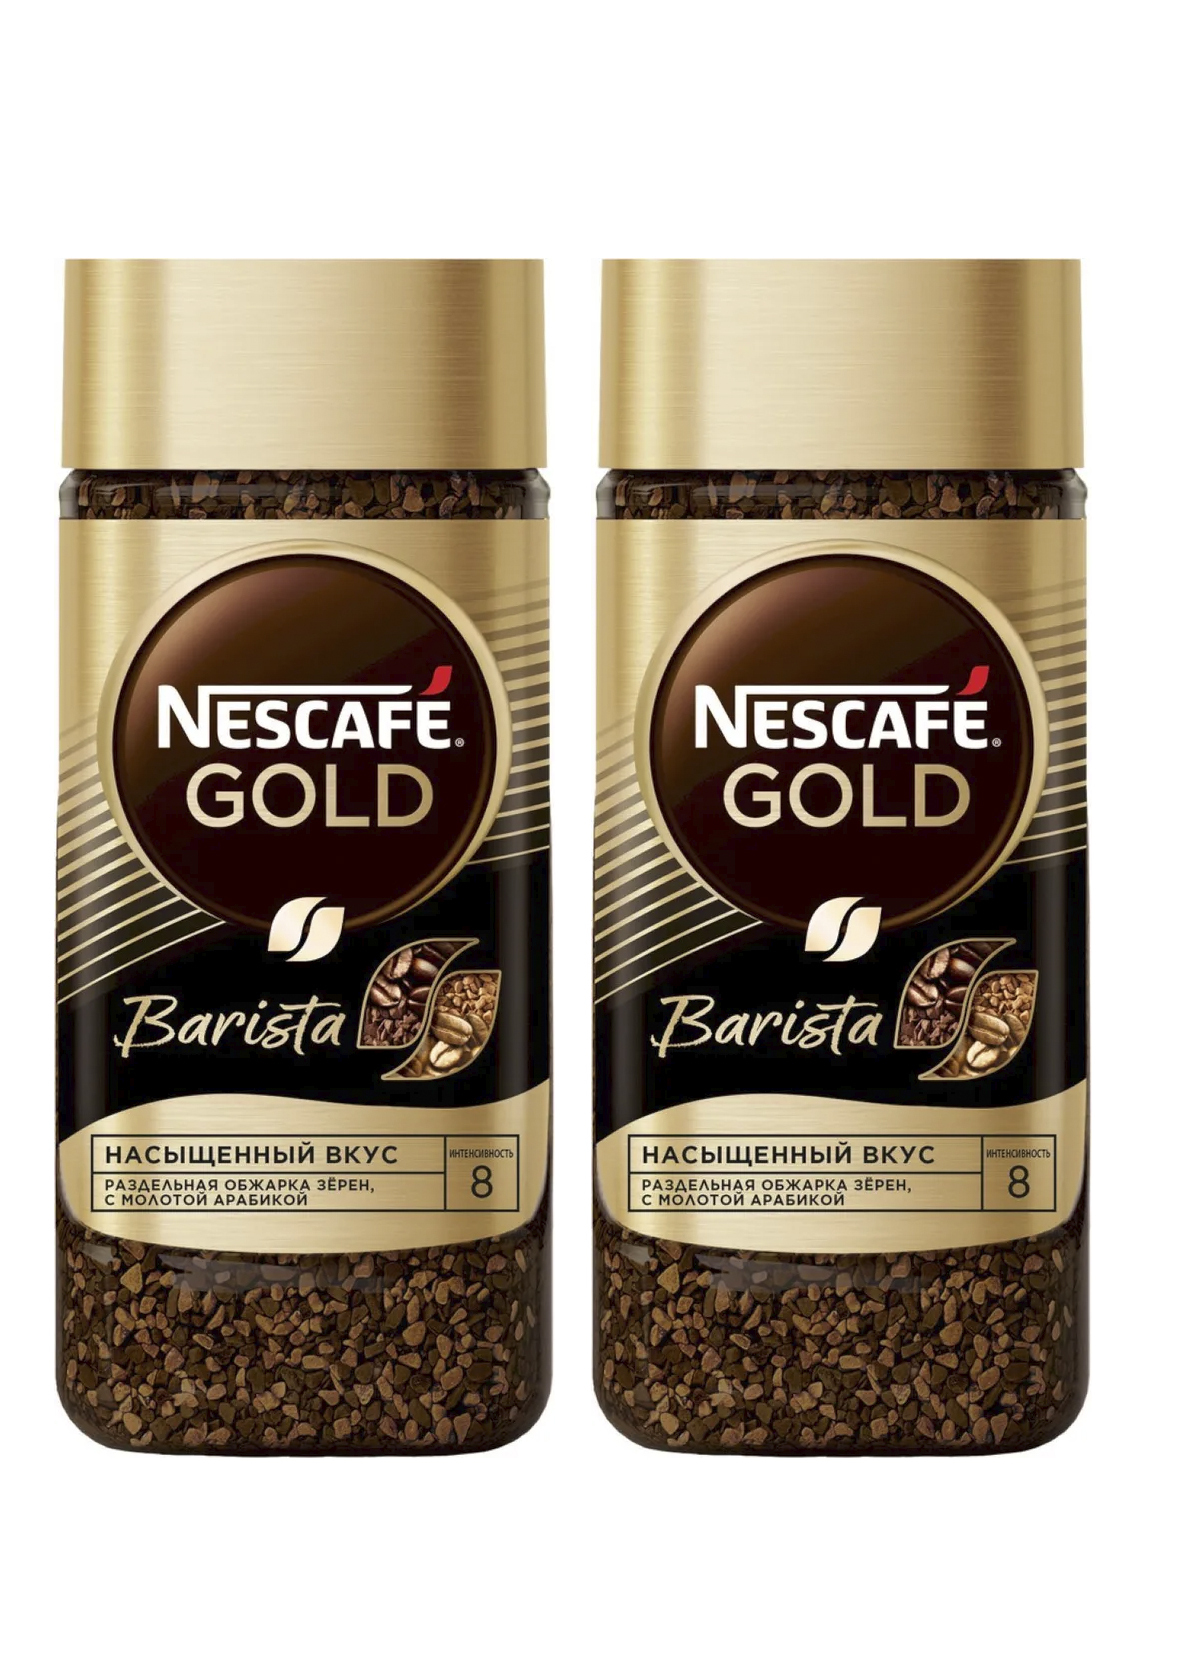 Нескафе бариста цена. Кофе Nescafe Gold Barista 85г. Nescafe Gold Barista, кофе растворимый, 85г.. Кофе Nescafe Gold черный 2г. Кофе растворимый Нескафе Голд бариста латте стекло, 85г.